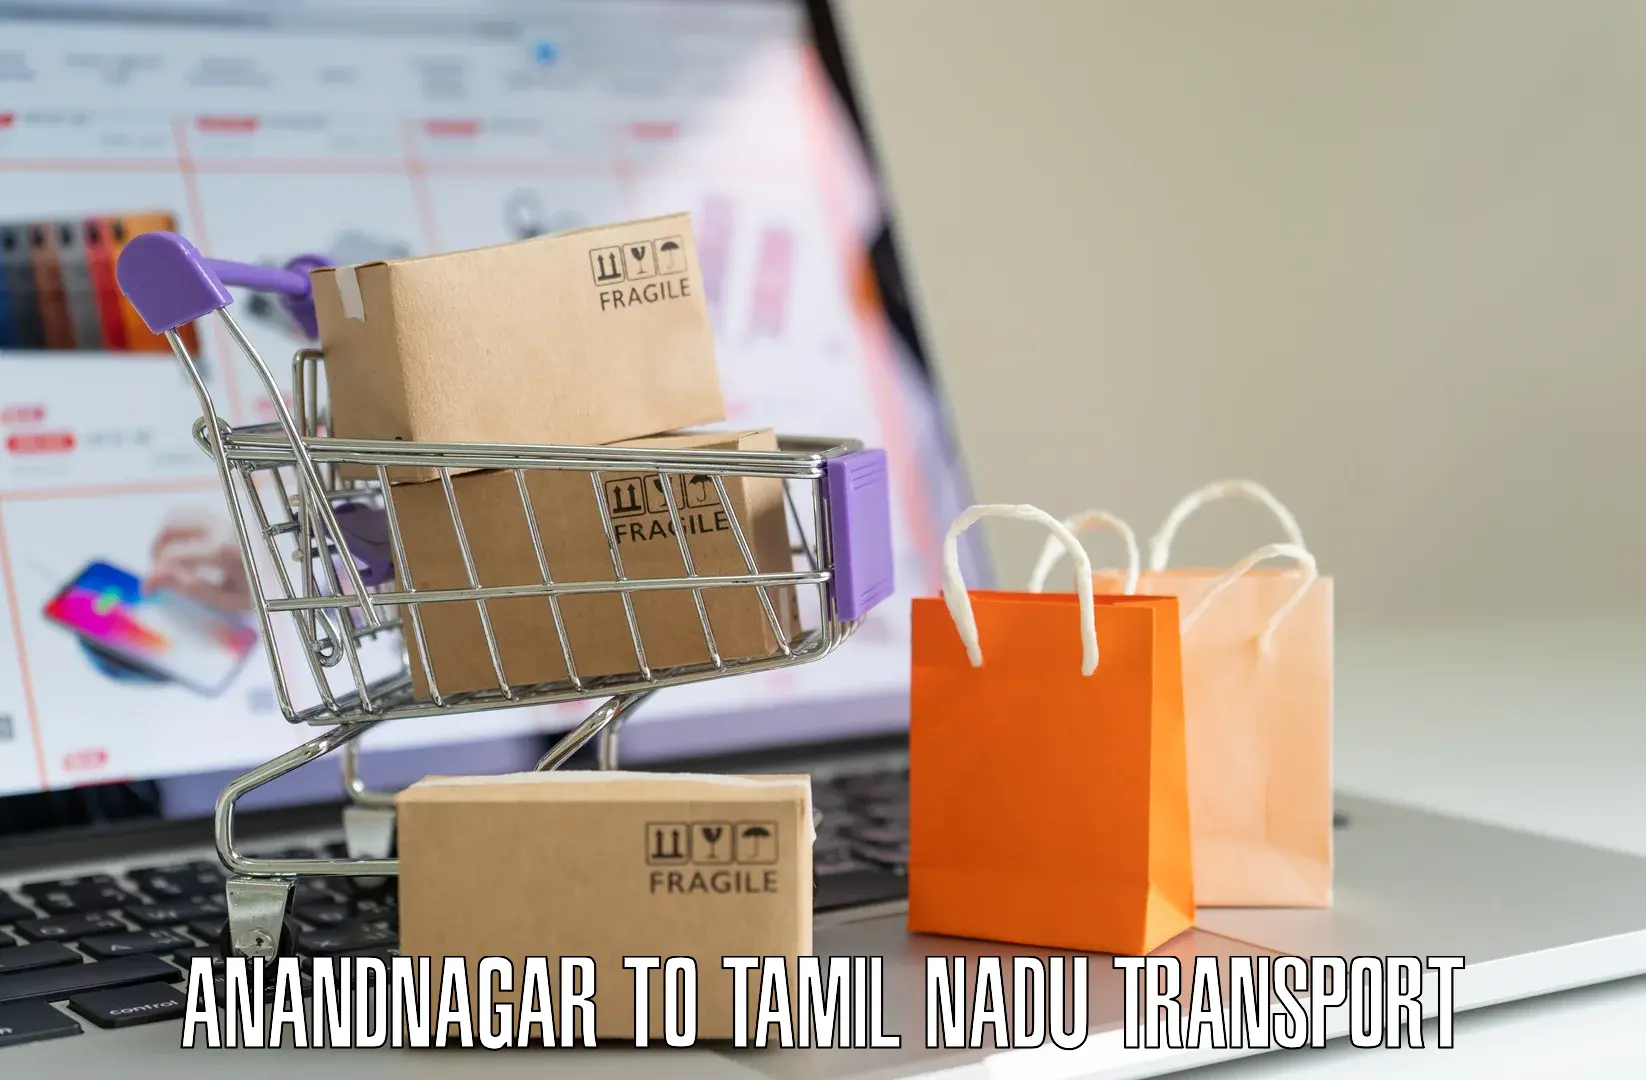 Daily transport service Anandnagar to Tiruchirappalli